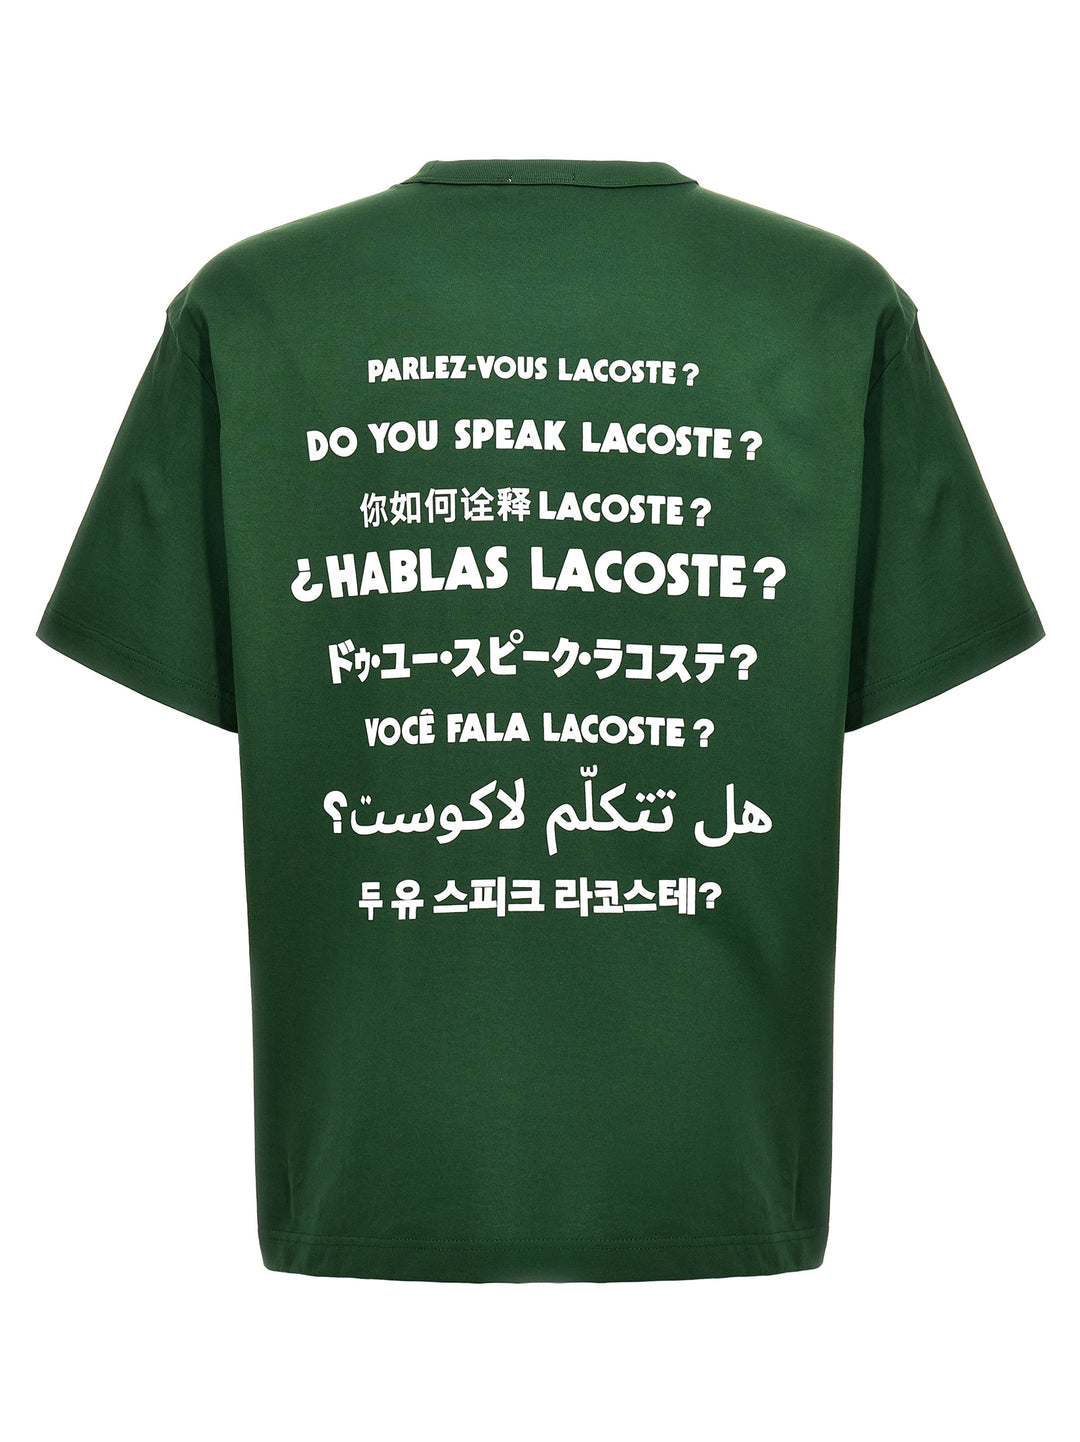 Do You Speak Lacoste? T Shirt Verde